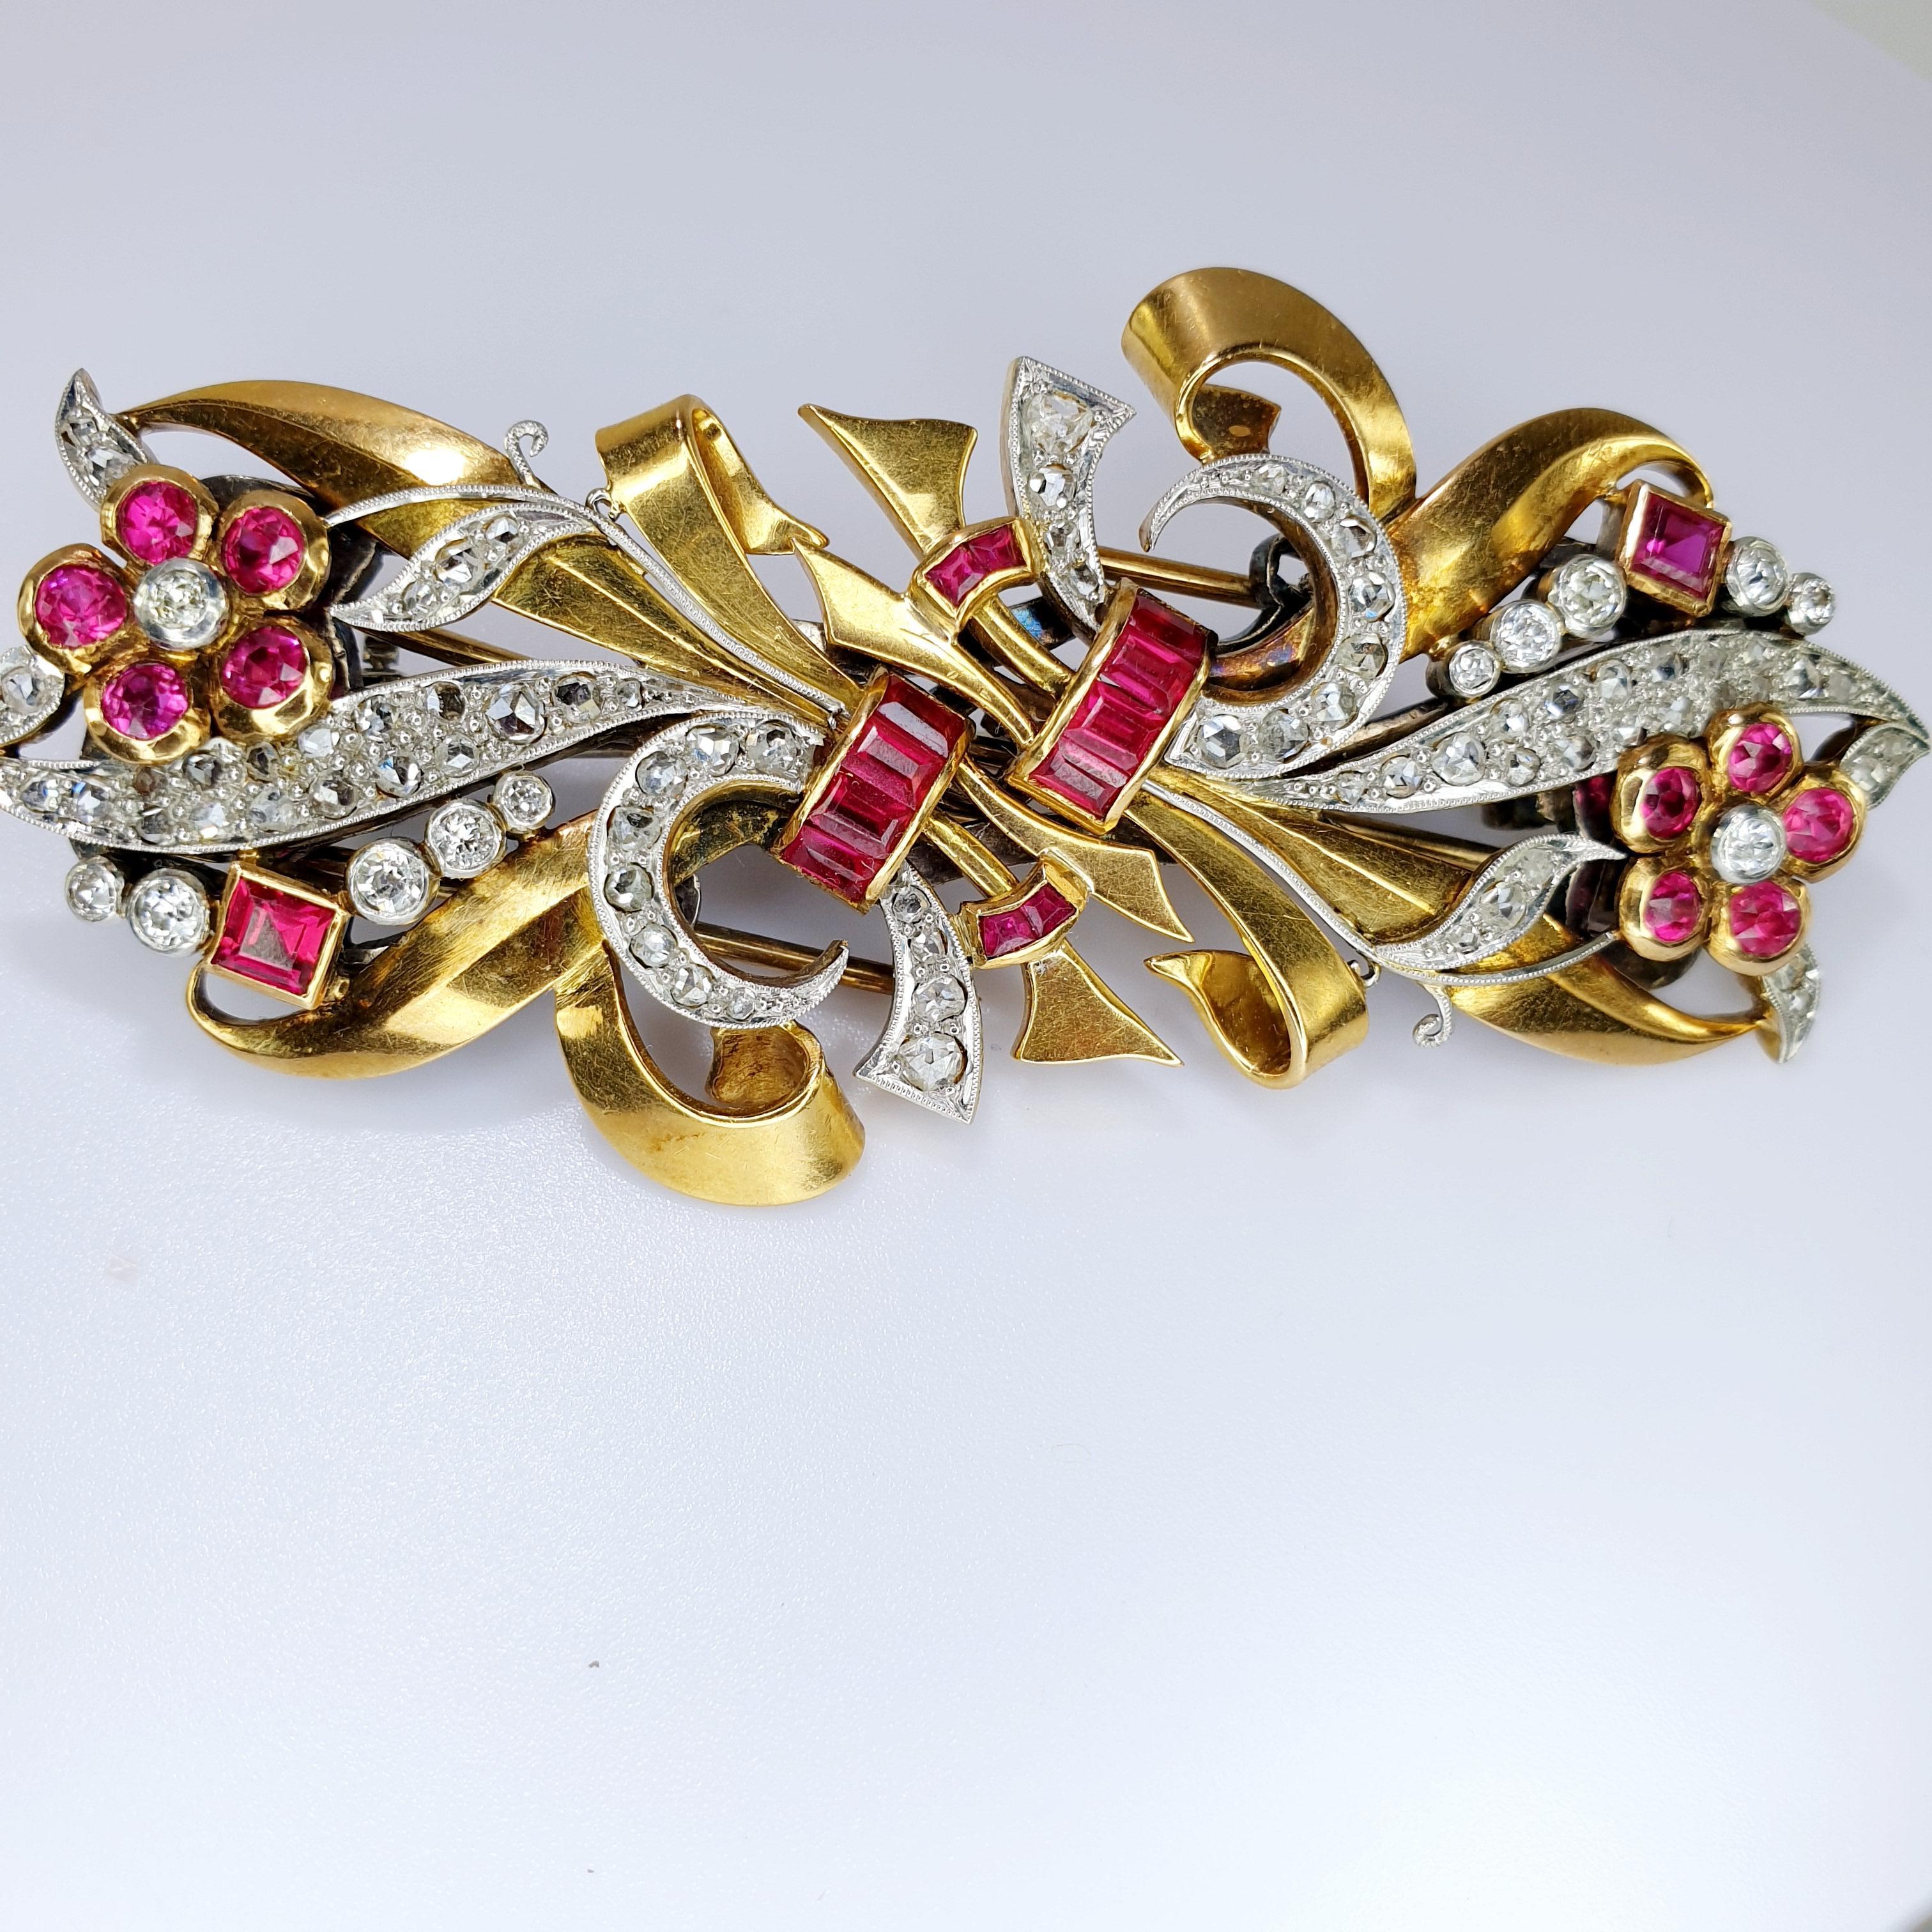 Dieser schöne Chevalier epoque  die 1940er Clips können einzeln oder zusammen getragen werden, indem sie individuell angepasst werden. 
Das Band aus Diamanten und Gold wirbelt und nistet rubinfarbene Edelsteine ein. Die Brosche ist aus 18k Roségold 